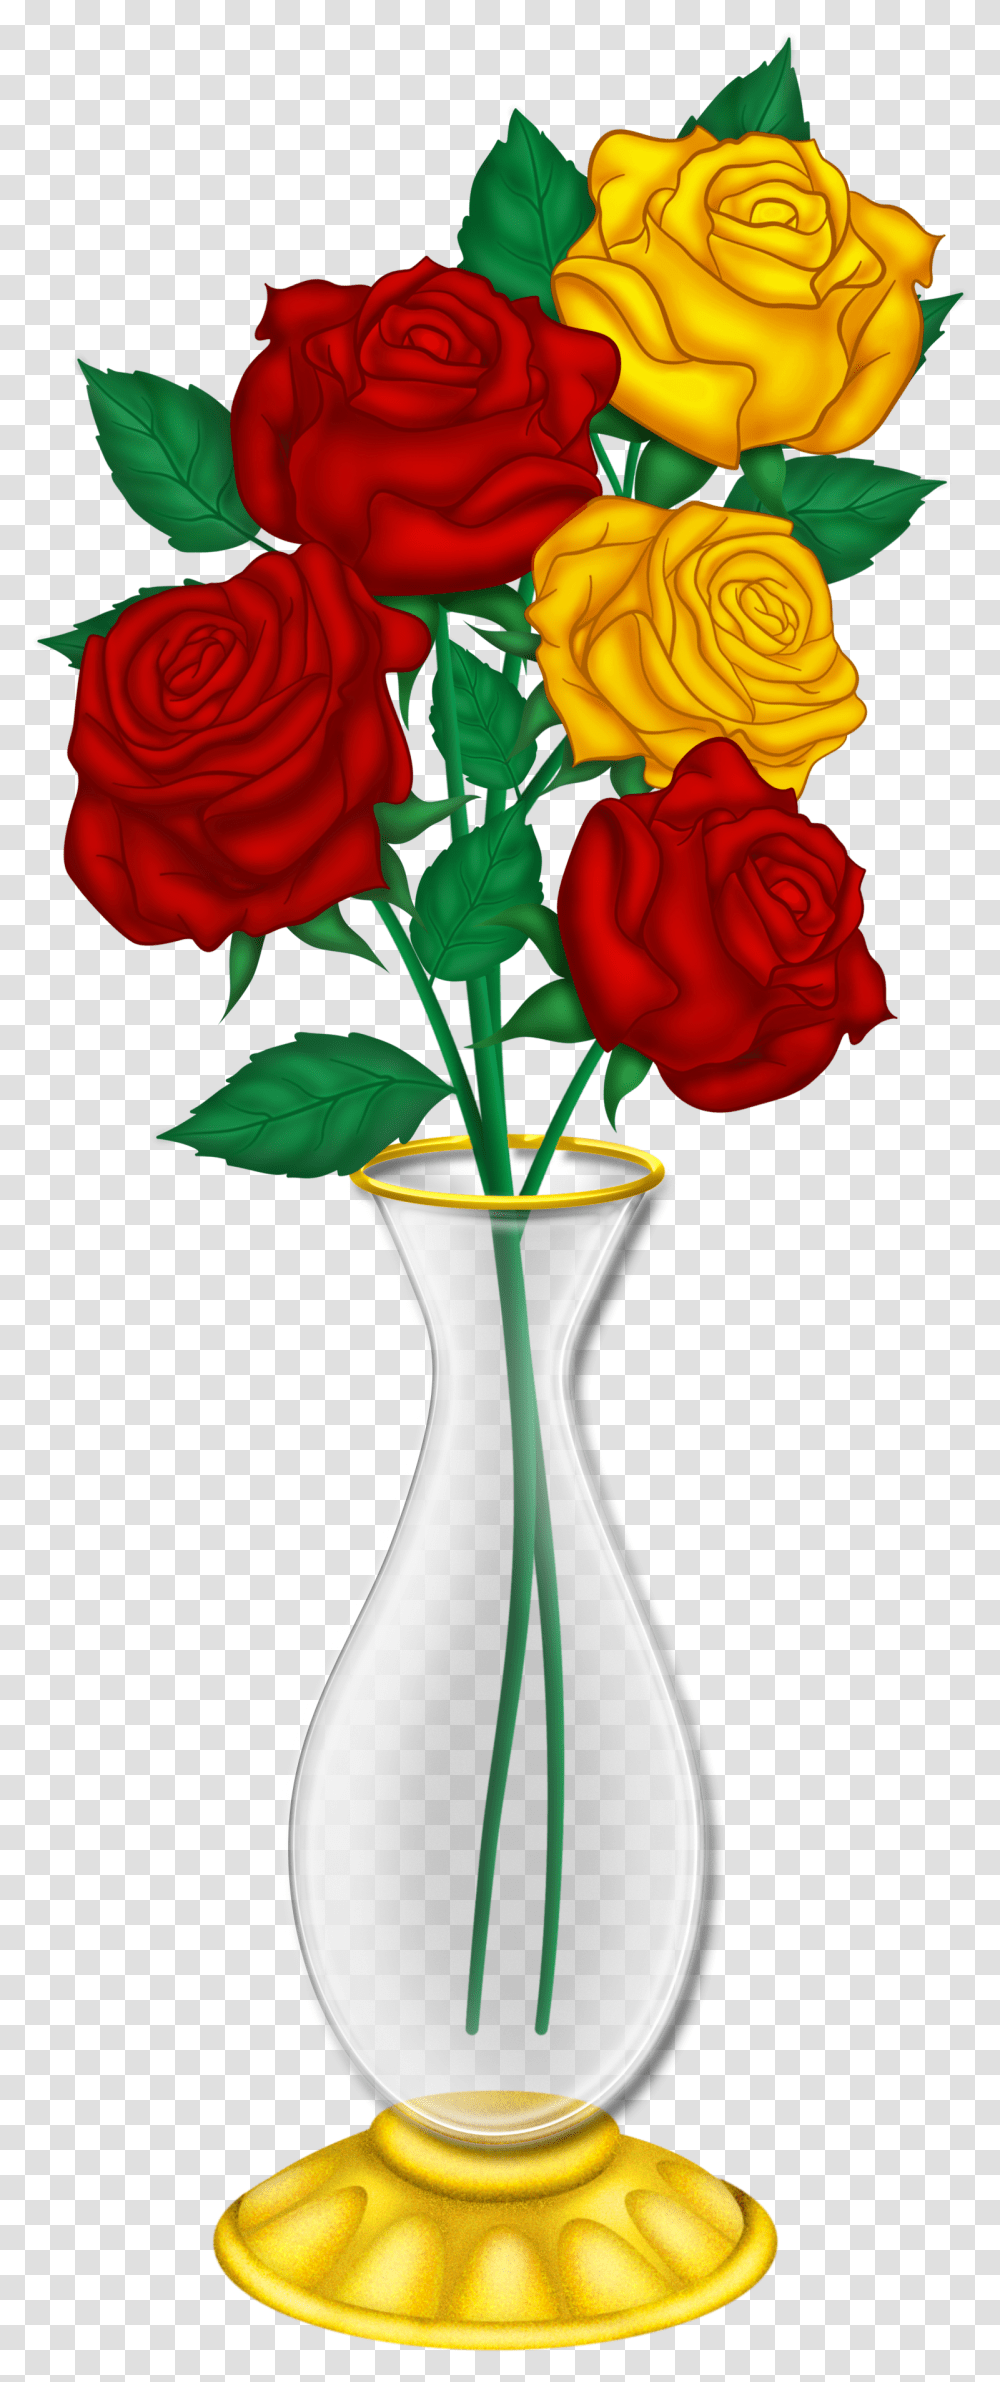 Flowers In Vase Rose Flower Vase Drawing, Plant, Blossom, Jar, Pottery Transparent Png